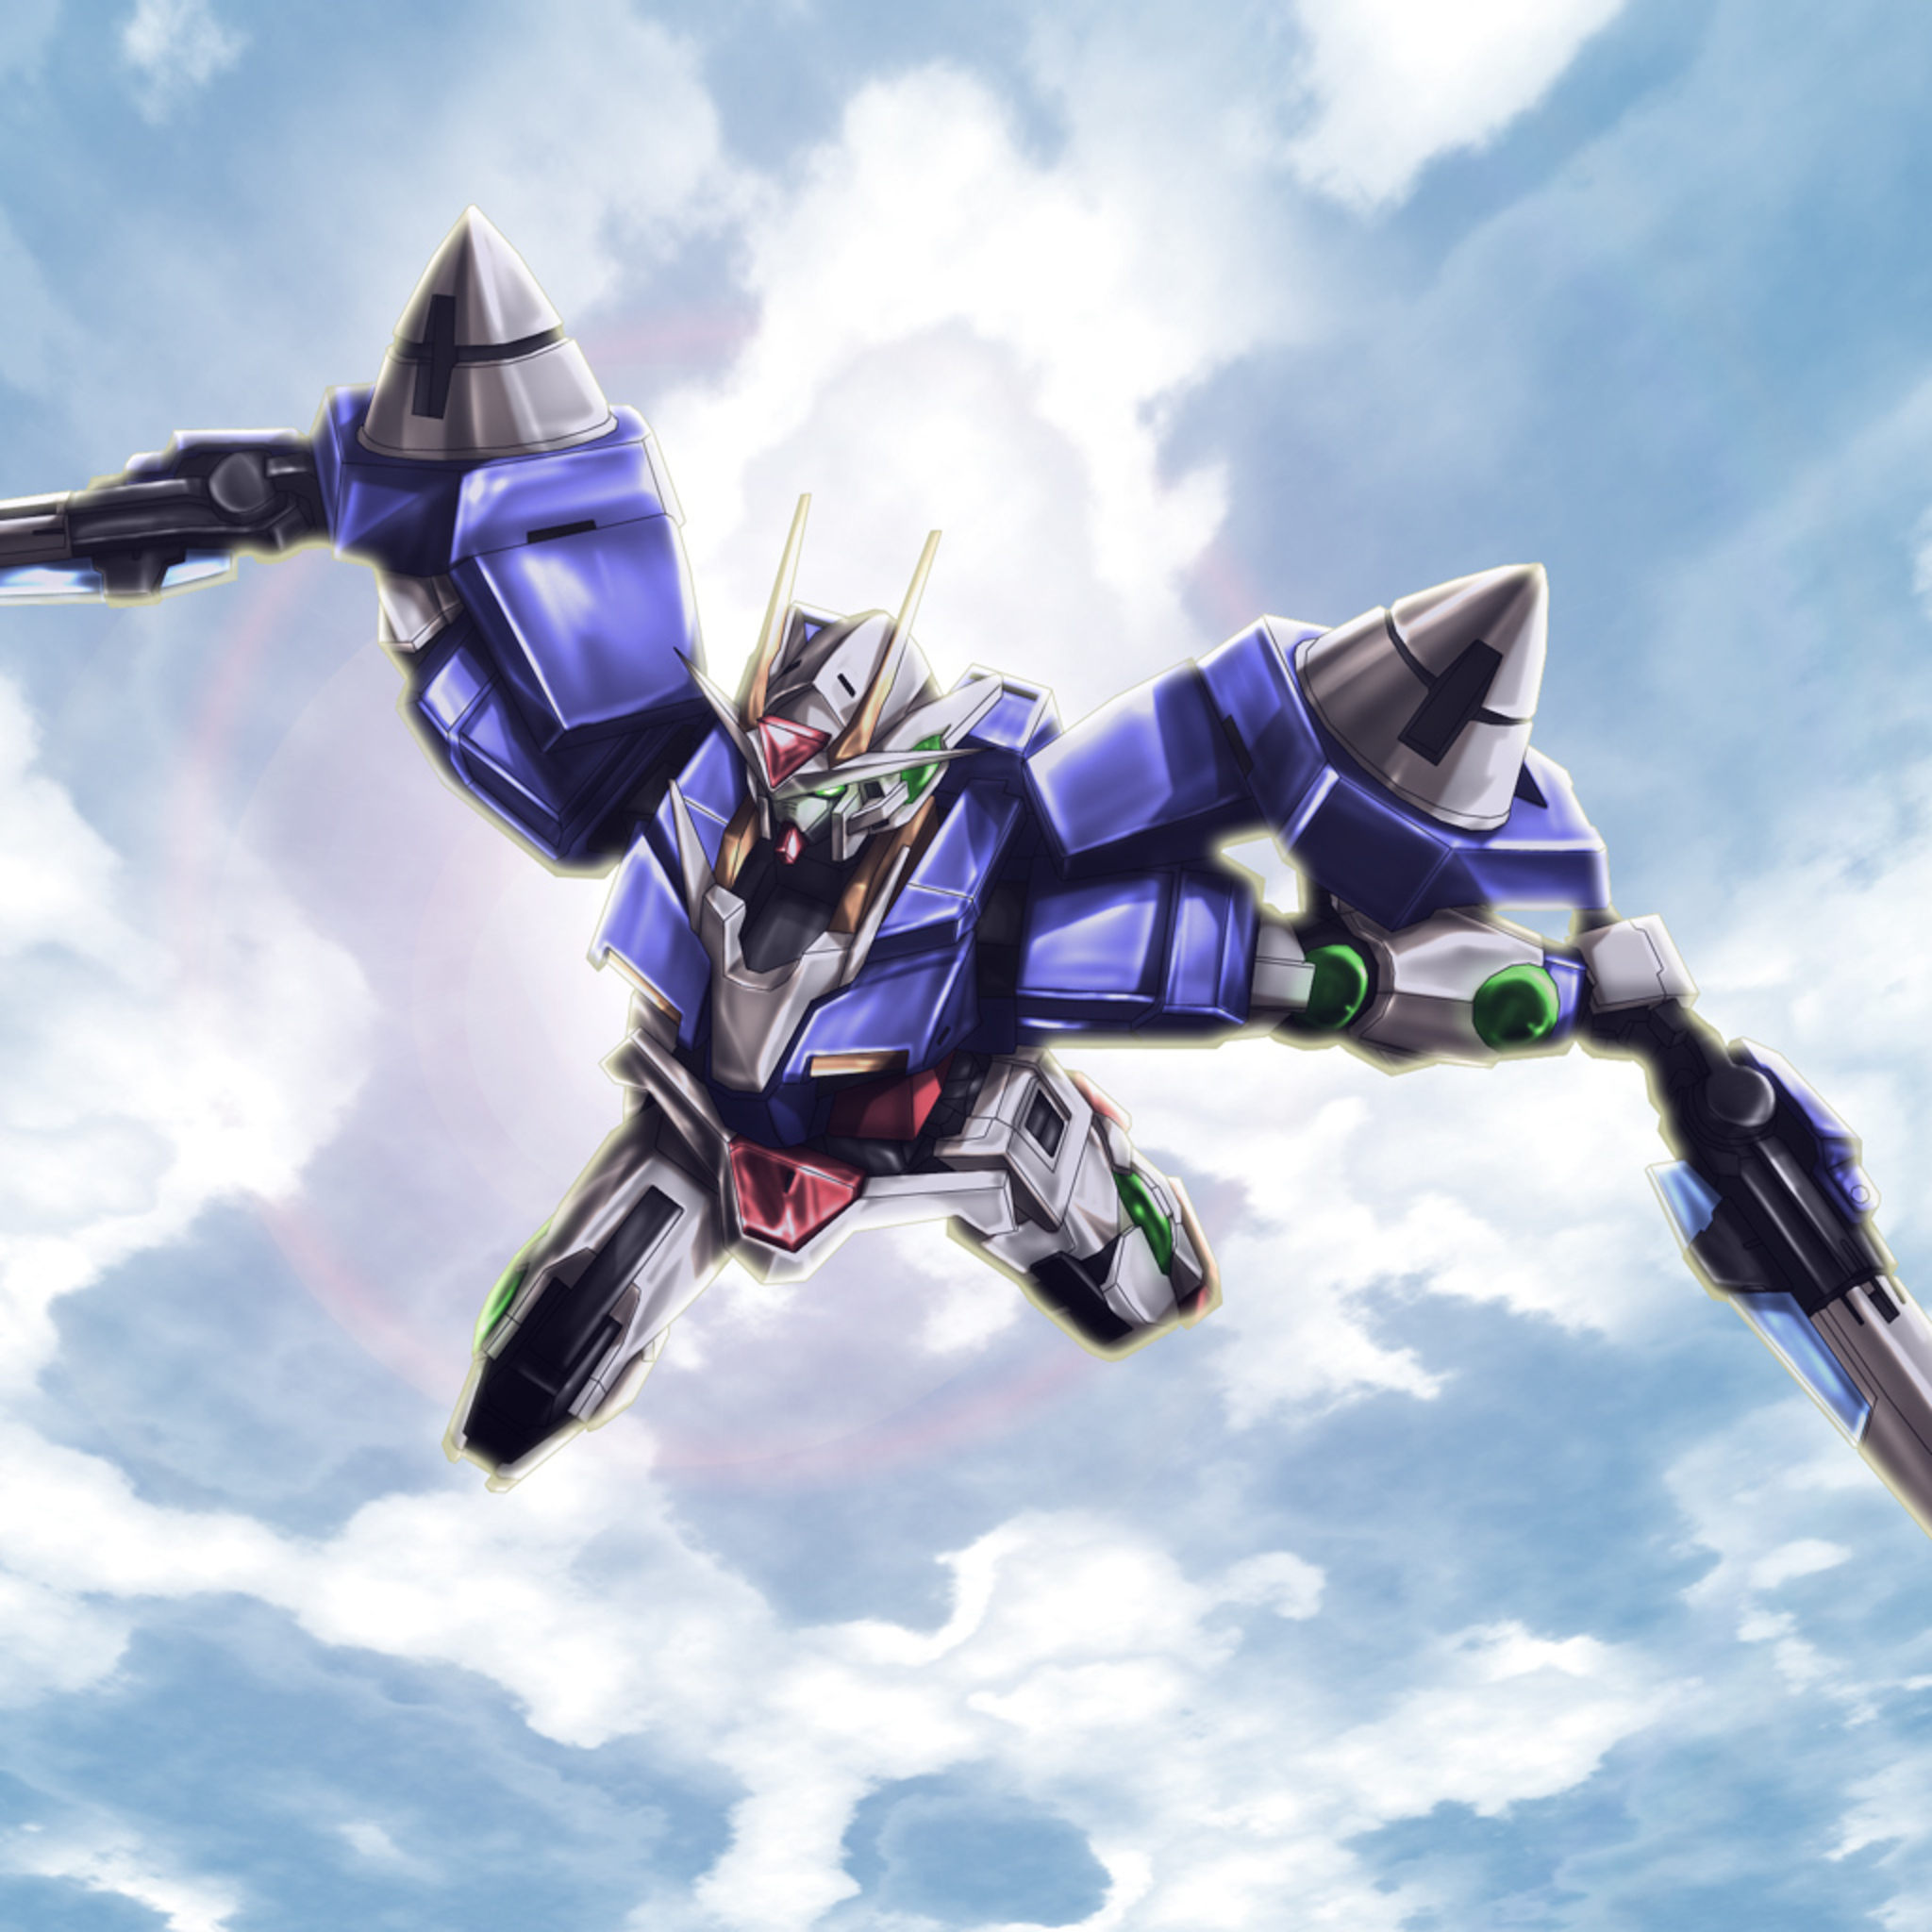 Anime 2048x2048 00 Gundam Mobile Suit Gundam 00 anime mechs Gundam Super Robot Taisen artwork digital art fan art